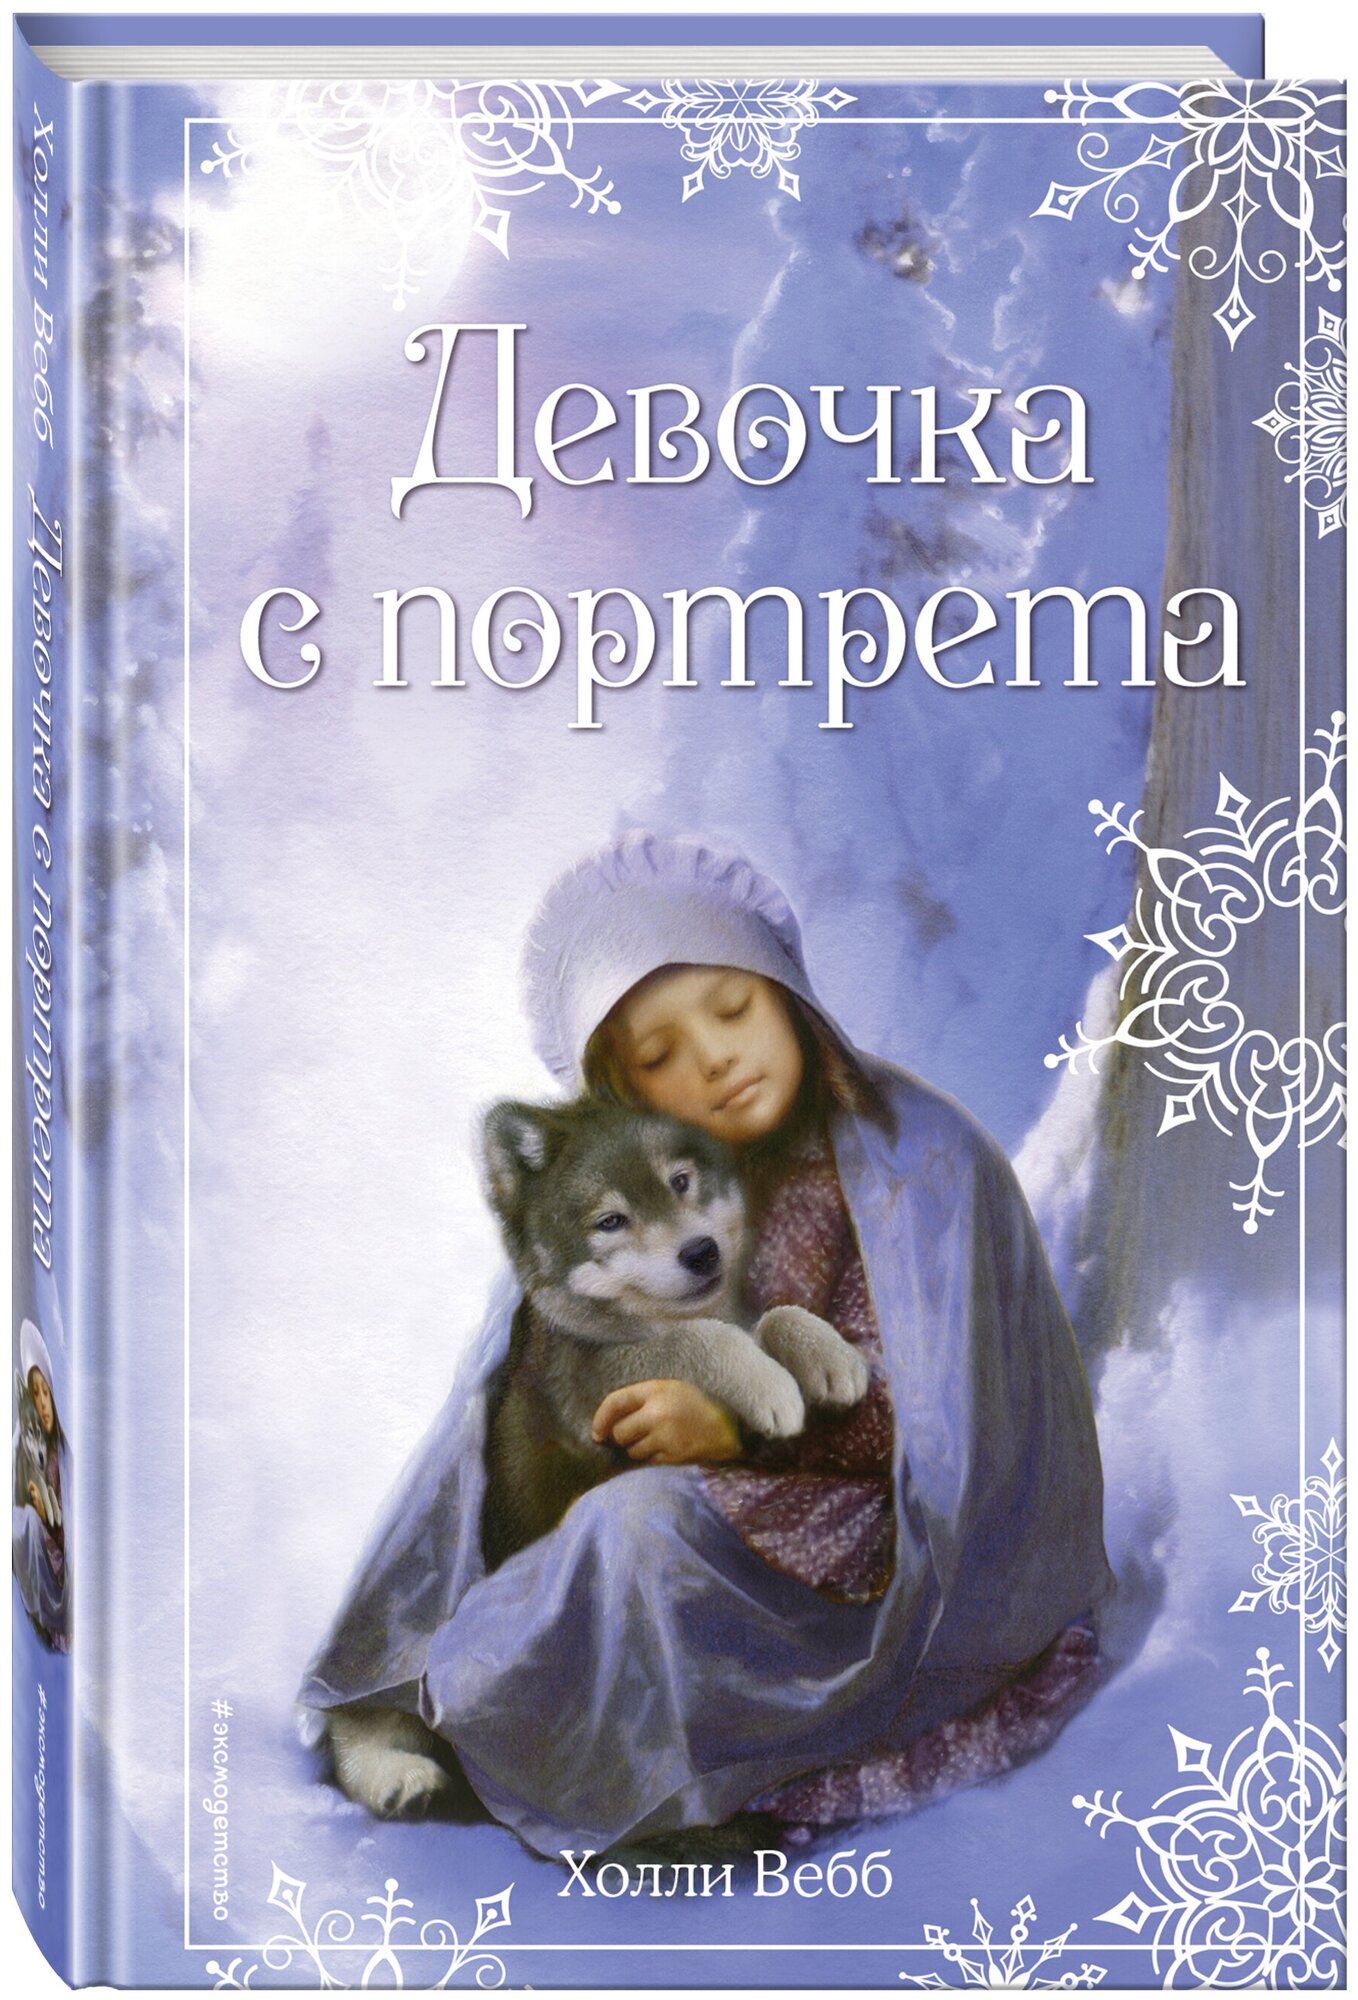 Вебб Х. Рождественские истории. Девочка с портрета (выпуск 1)